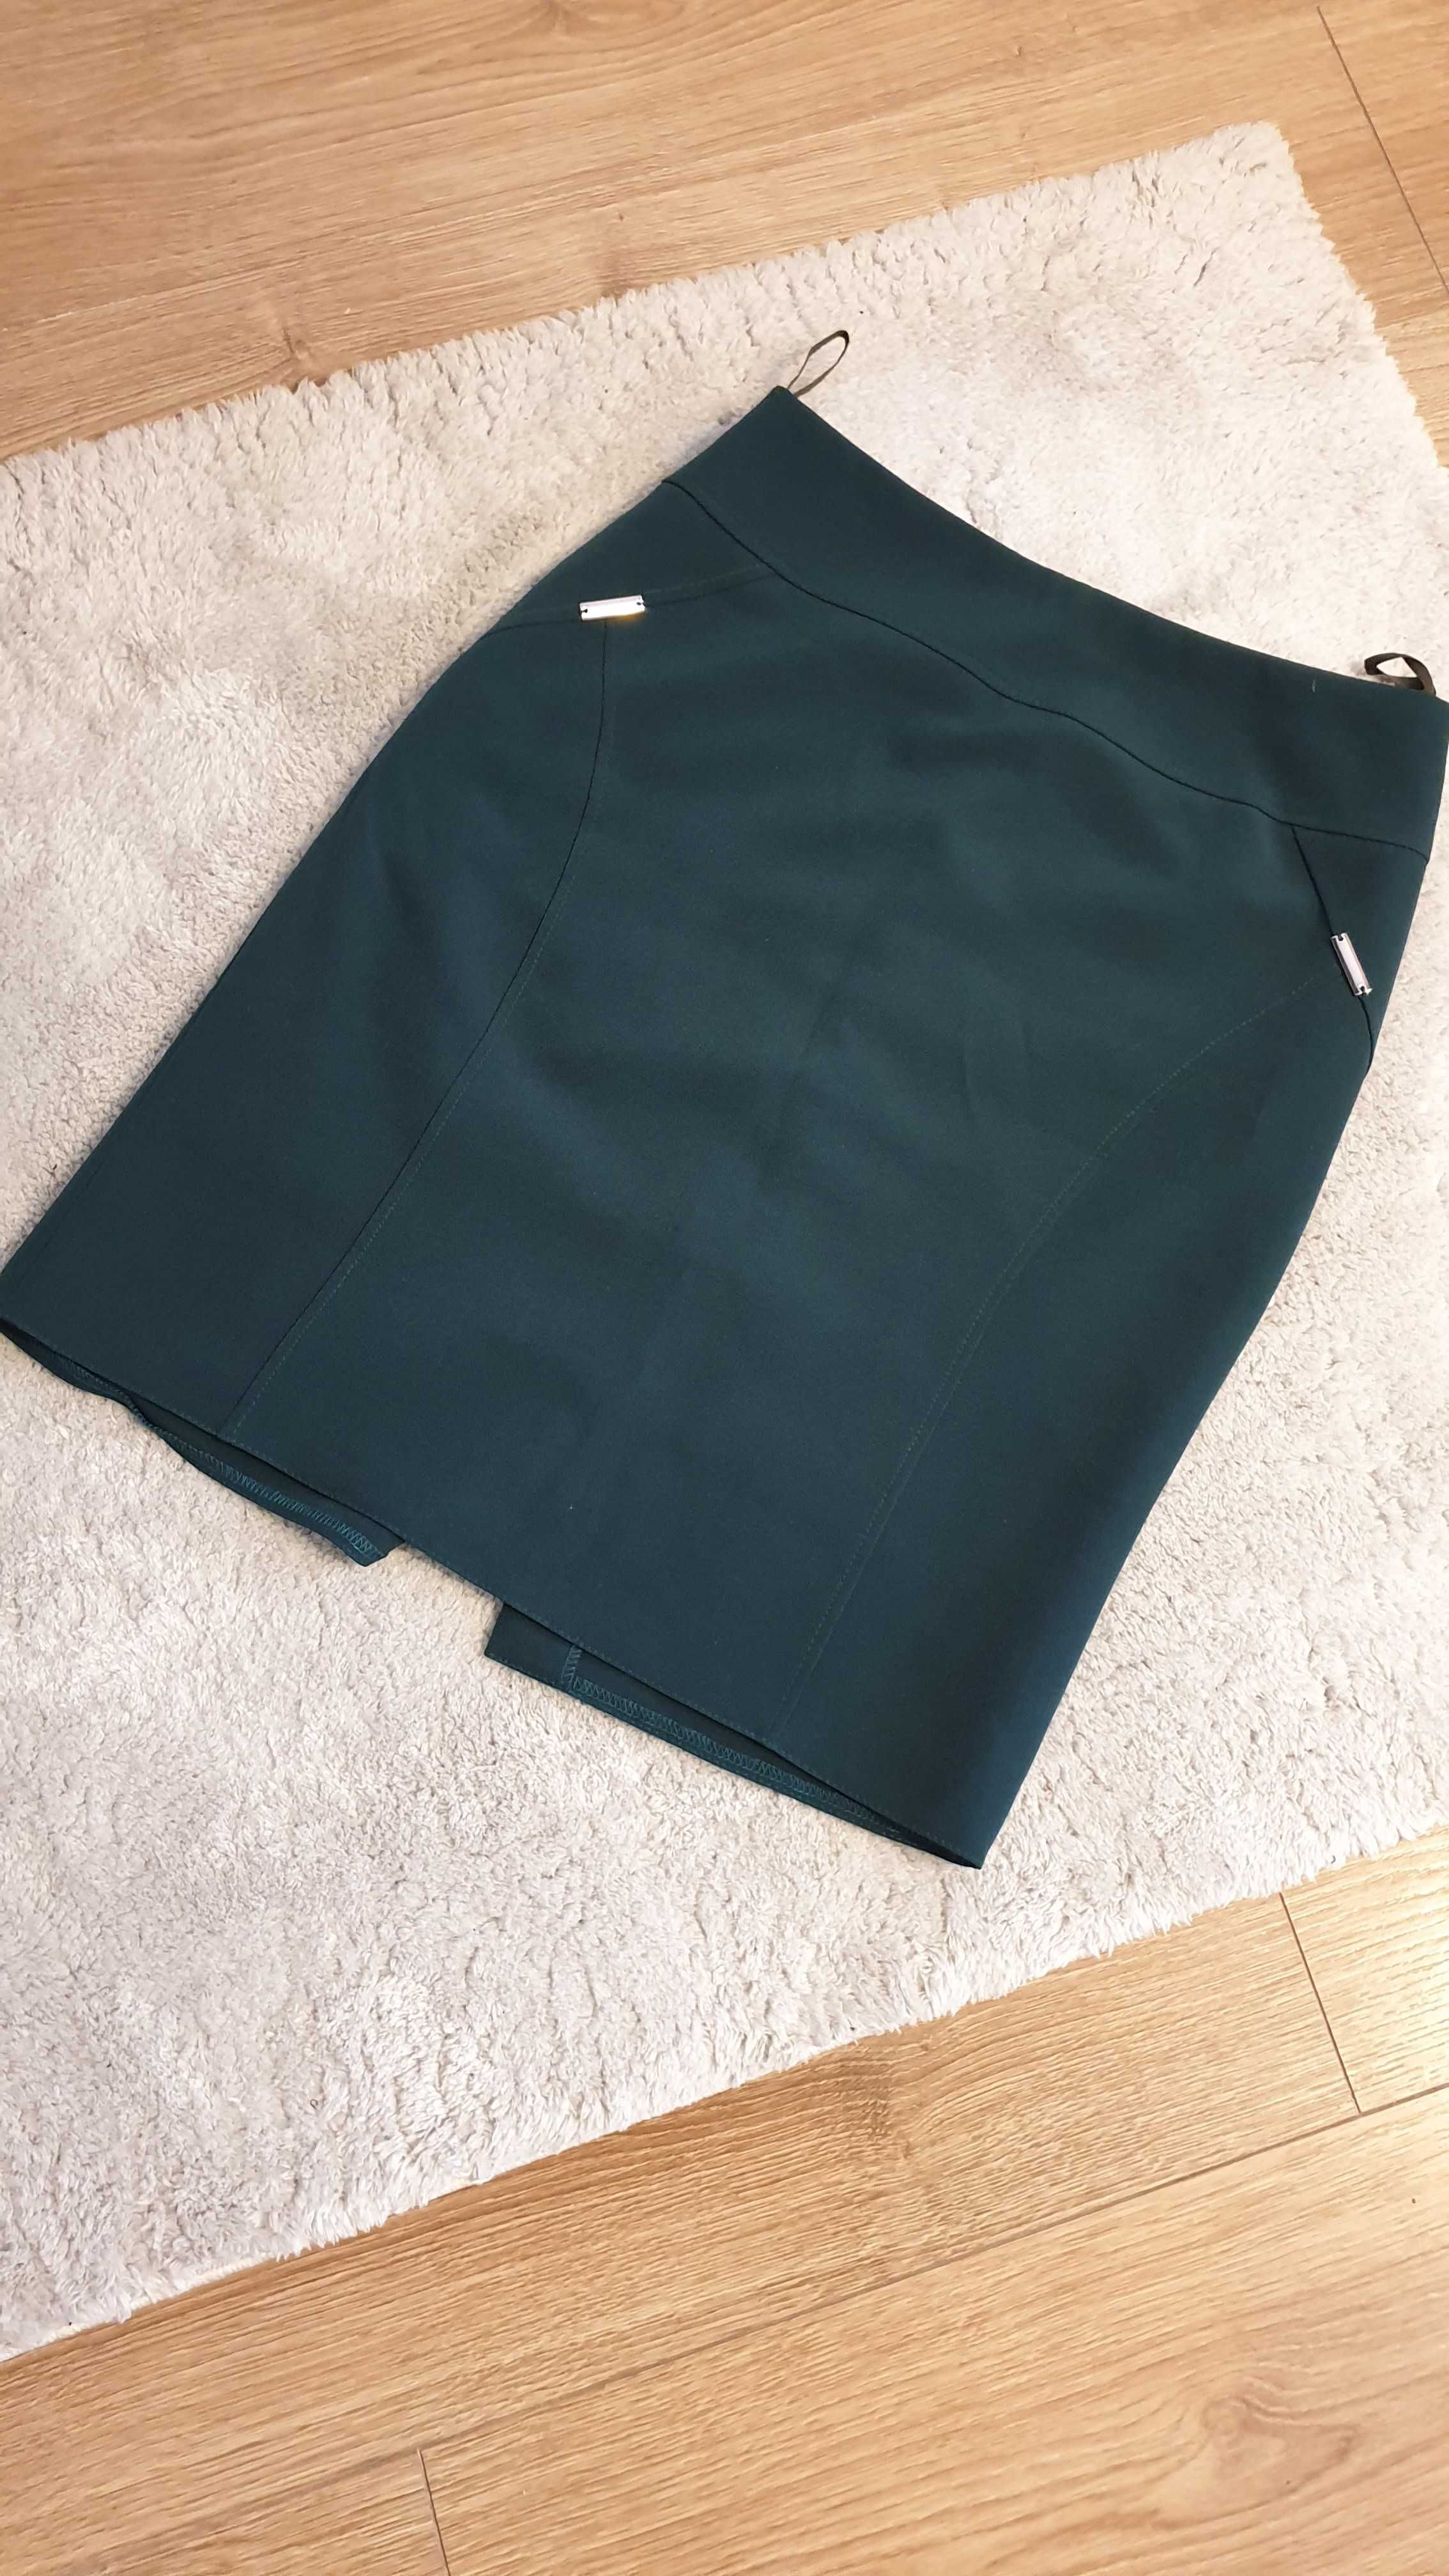 Elegancka spódnica DANA zielona, khaki - rozmiar M, z podszewką